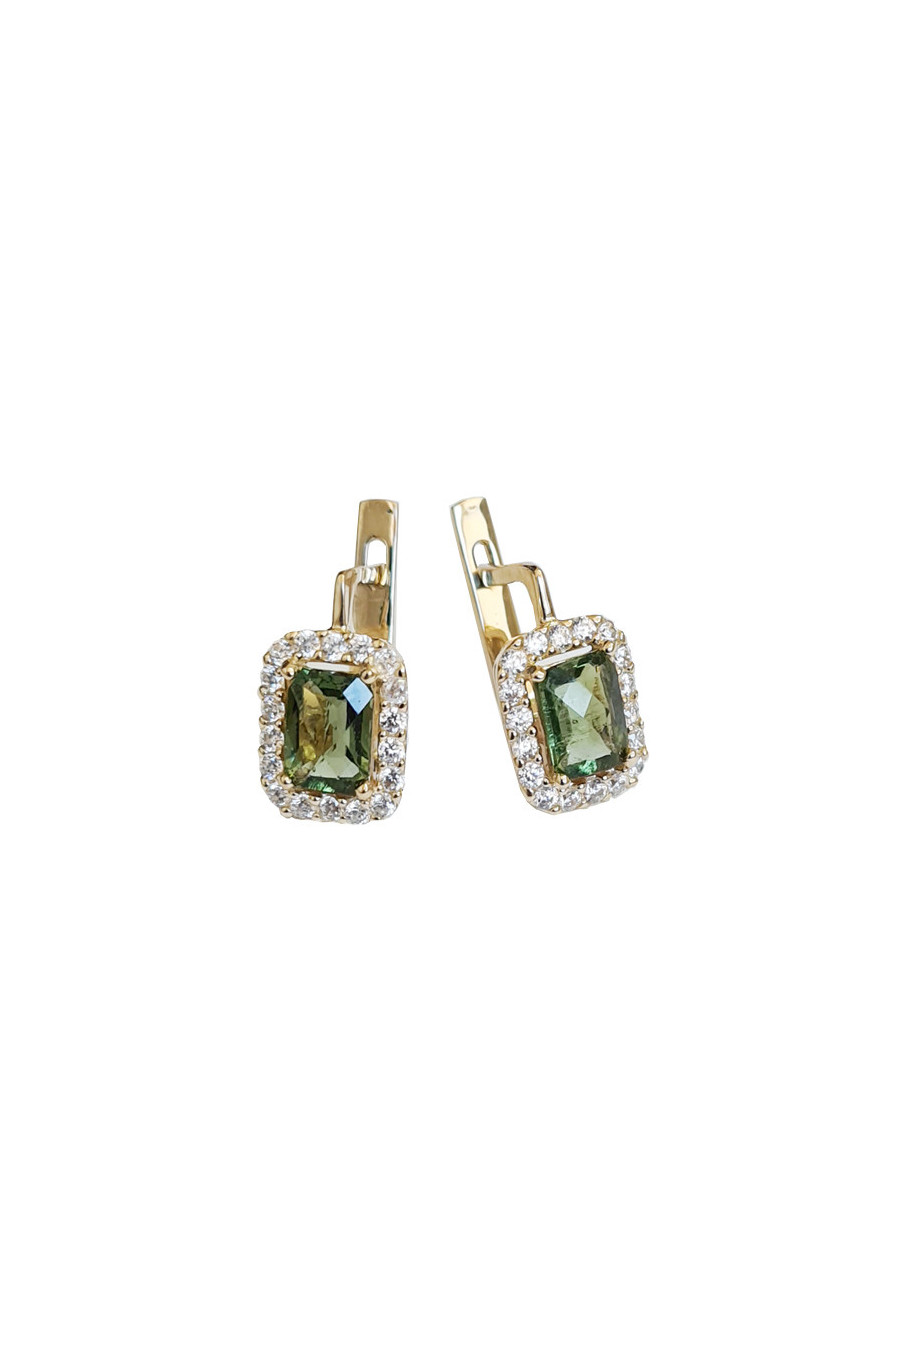 Gold earrings,moldavite,zircon